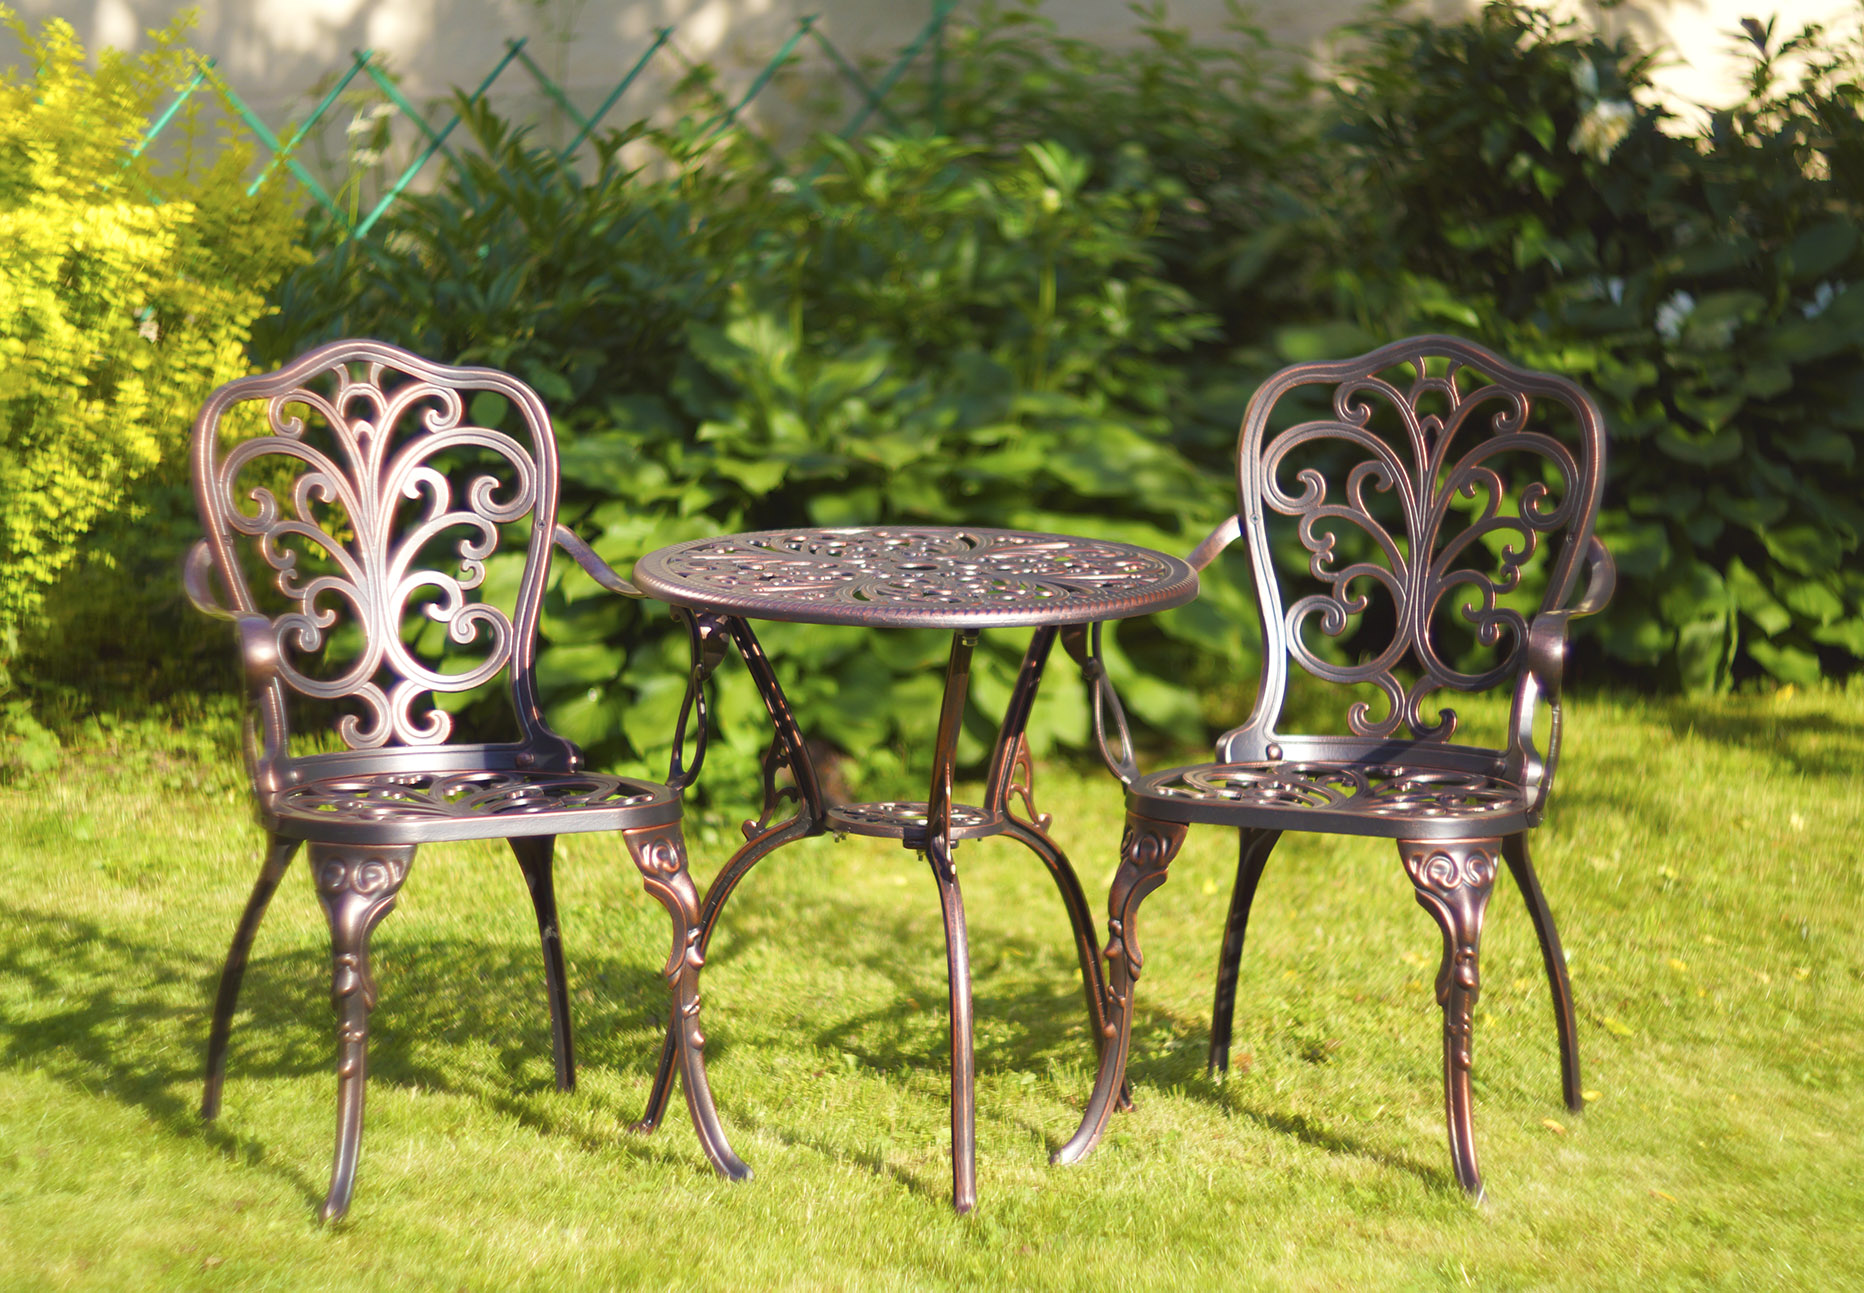 Мебель из литого алюминия, столик и стулья из металла для дачи и сада, мебель для улицы, садовая мебель из металла, чугунные столы и стулья, литая мебель из алюминия для кафе.